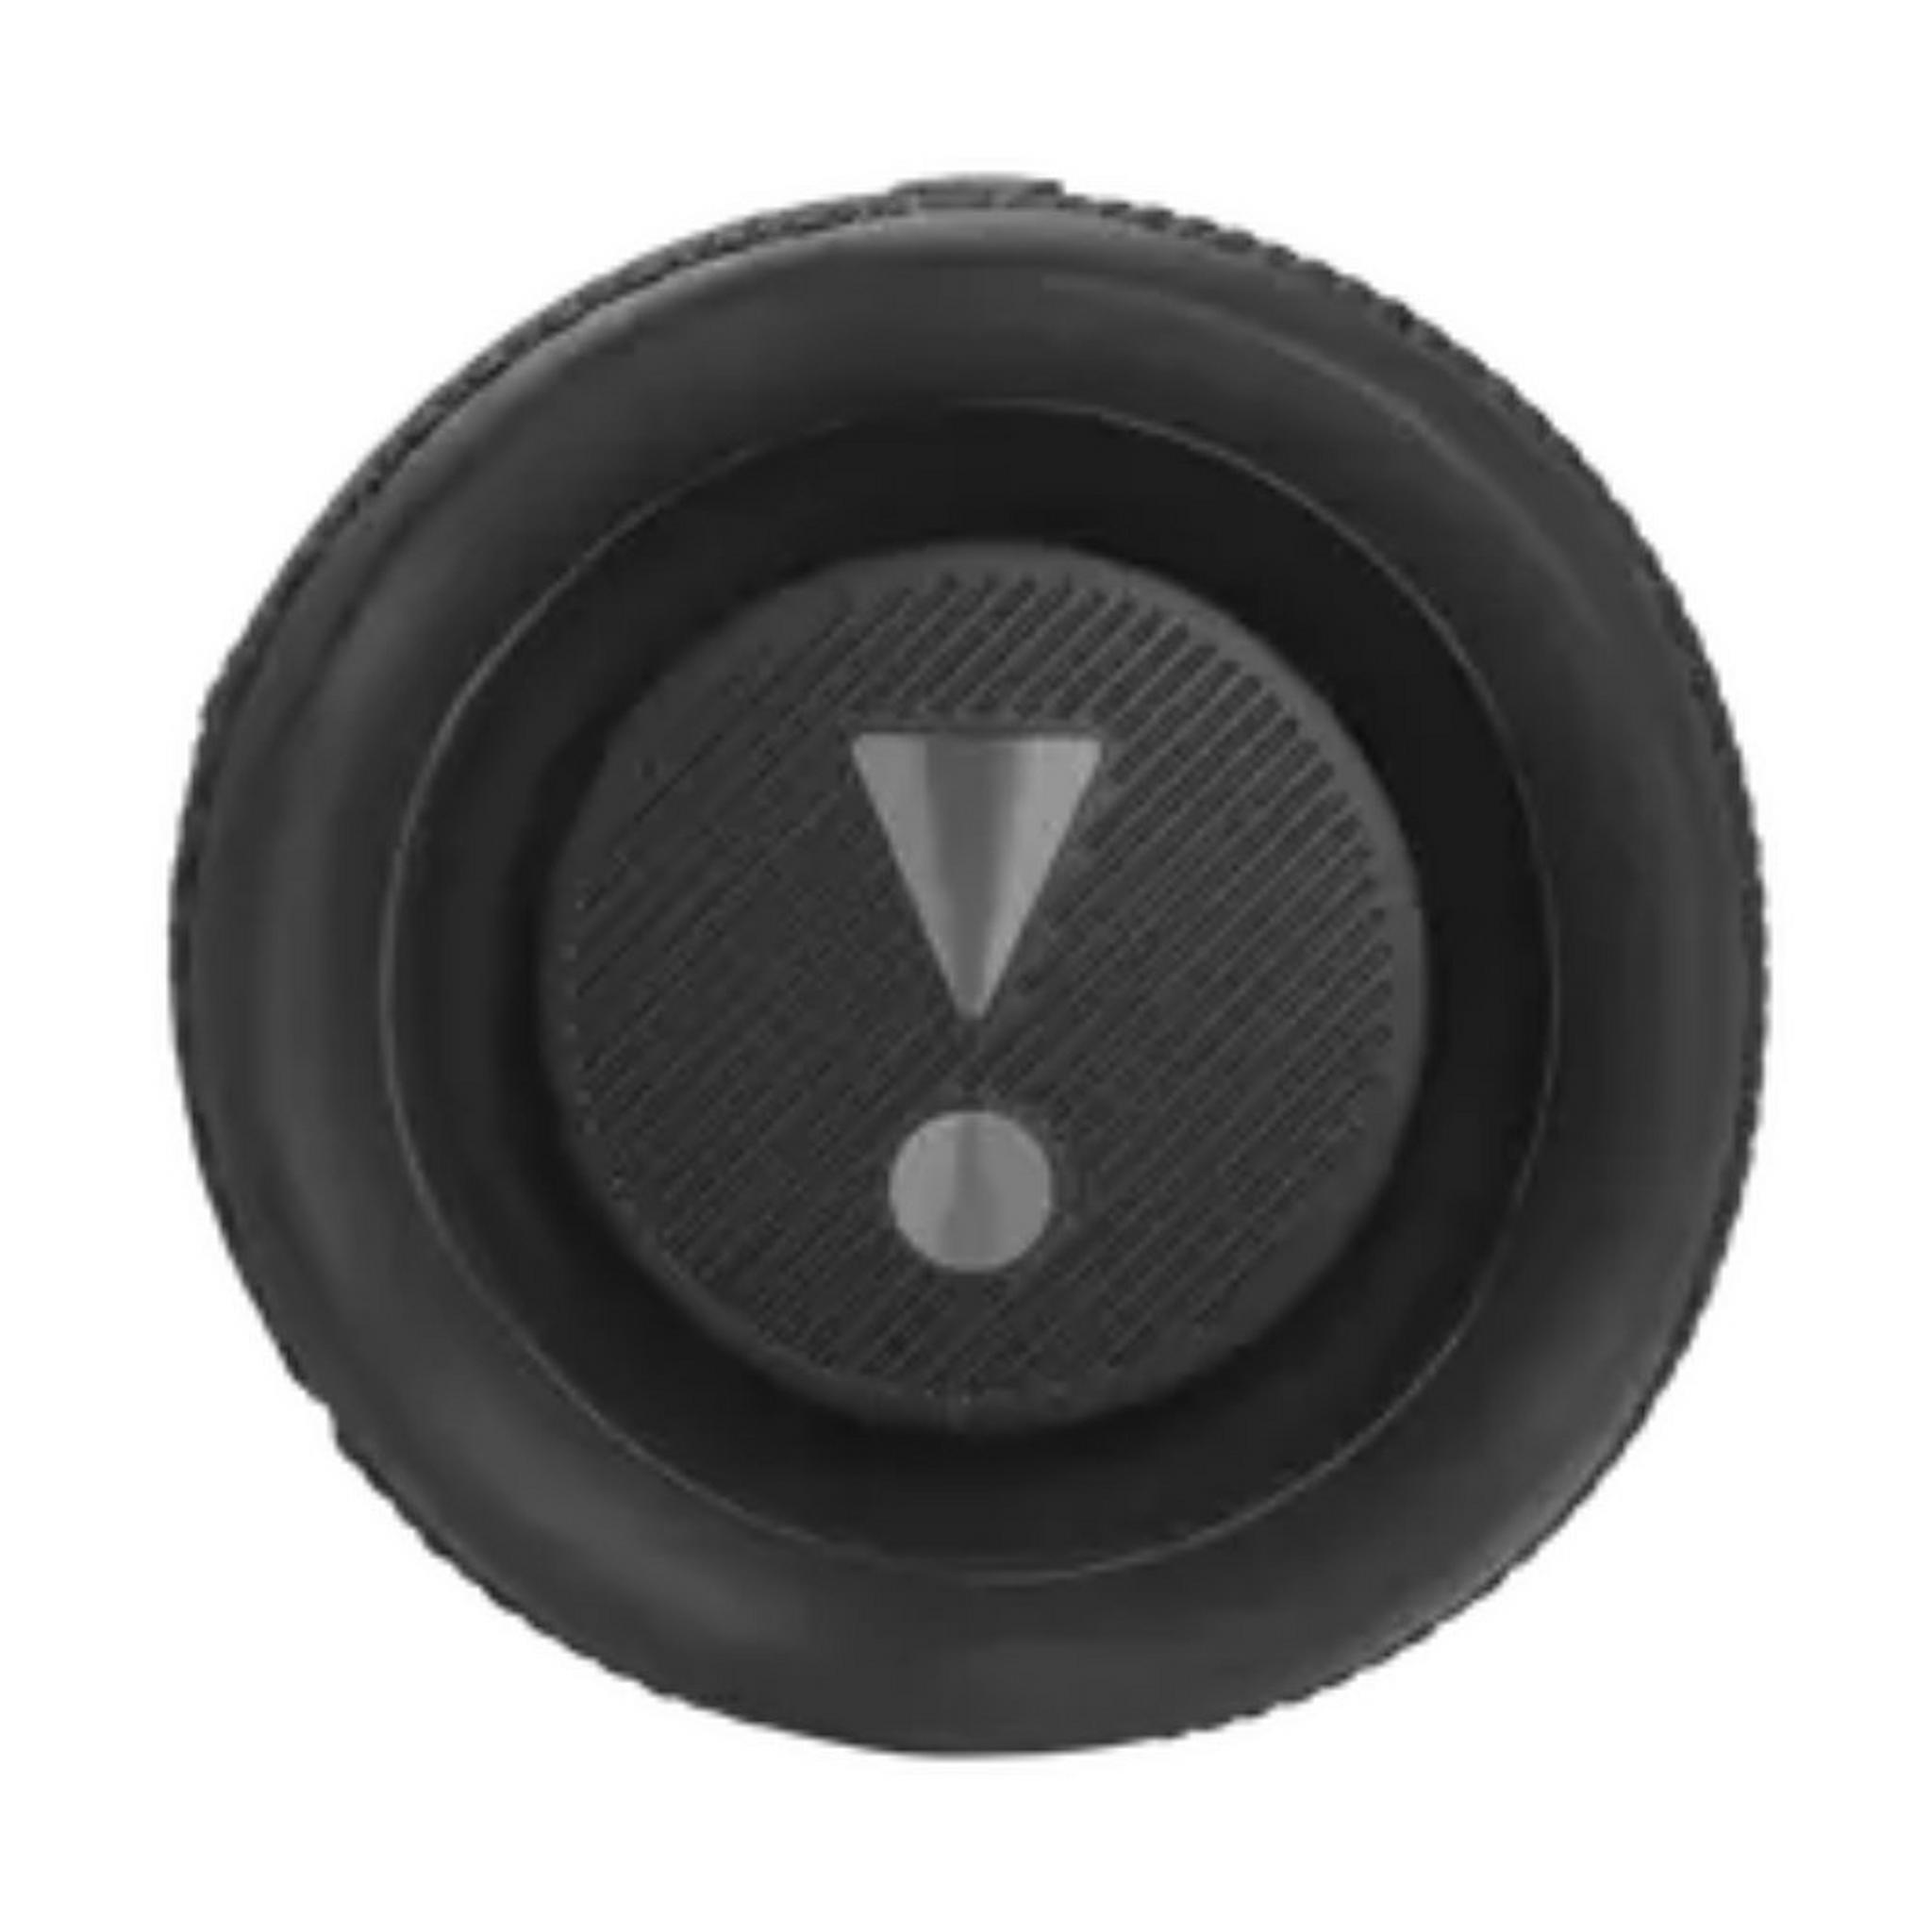 مكبر الصوت اللاسلكي فليب 6 مقاوم للماء من جي بي ال - أسود